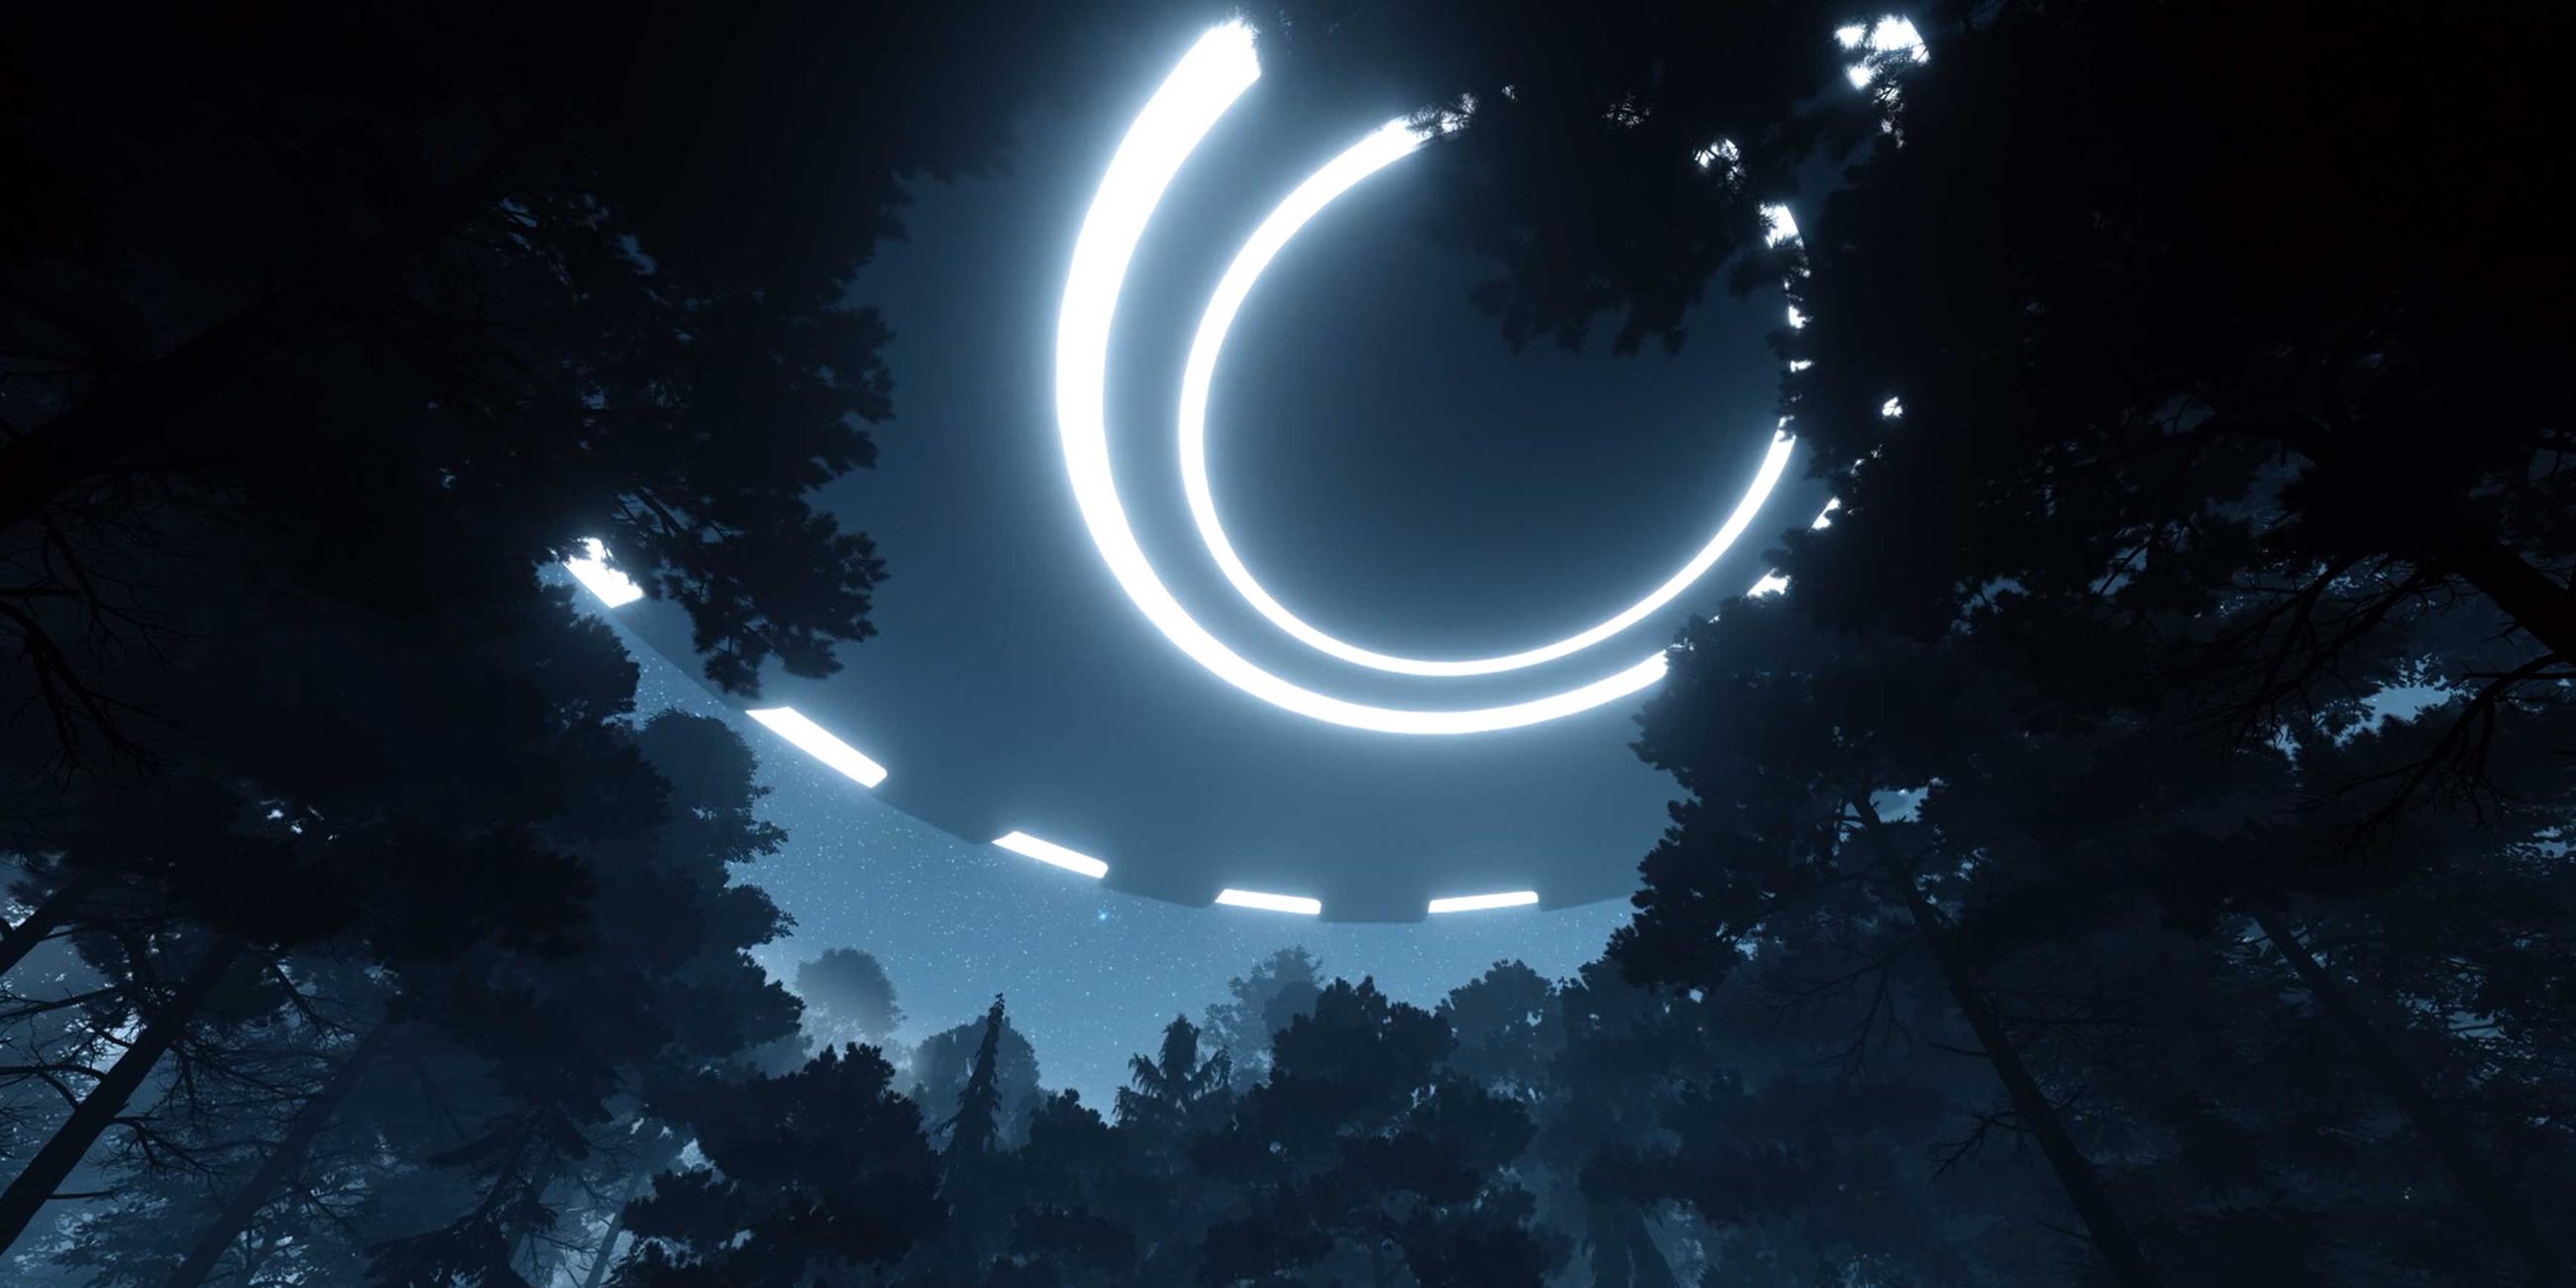  Über einem Wald bei Nacht schwebt ein rundes Raumschiff mit leuchtenden Kreisen.